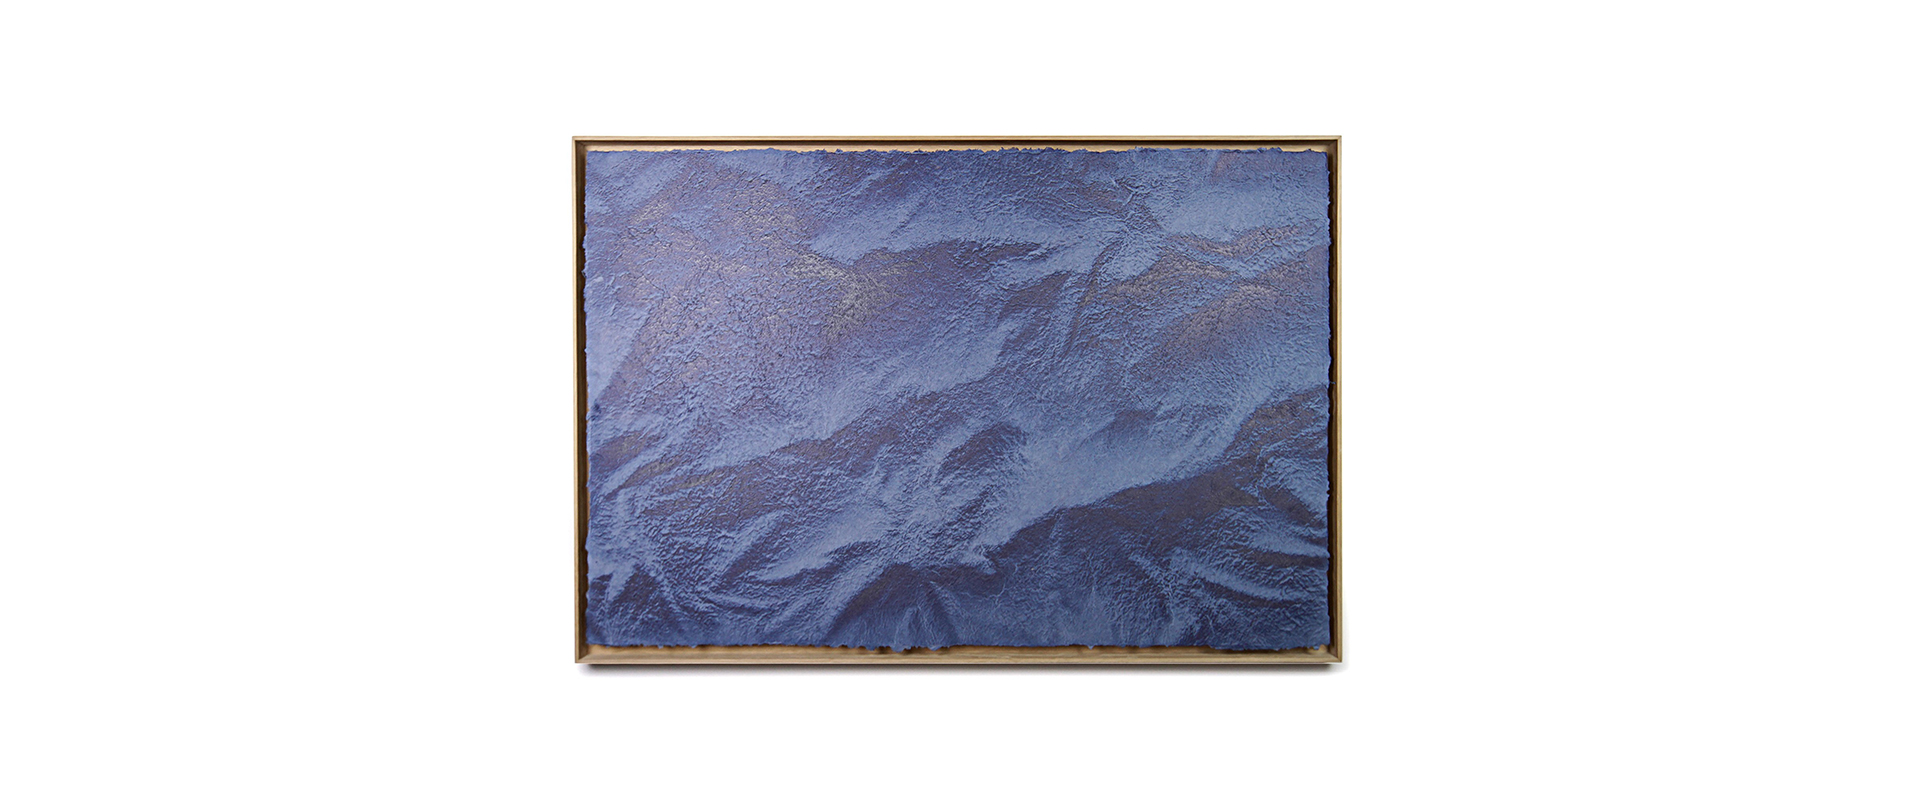 Landschaft 05042022 – 2022, gegossene Flachsfasern, gesprühtes Pigment, Schattenfugenrahmen, 60 x 90 cm